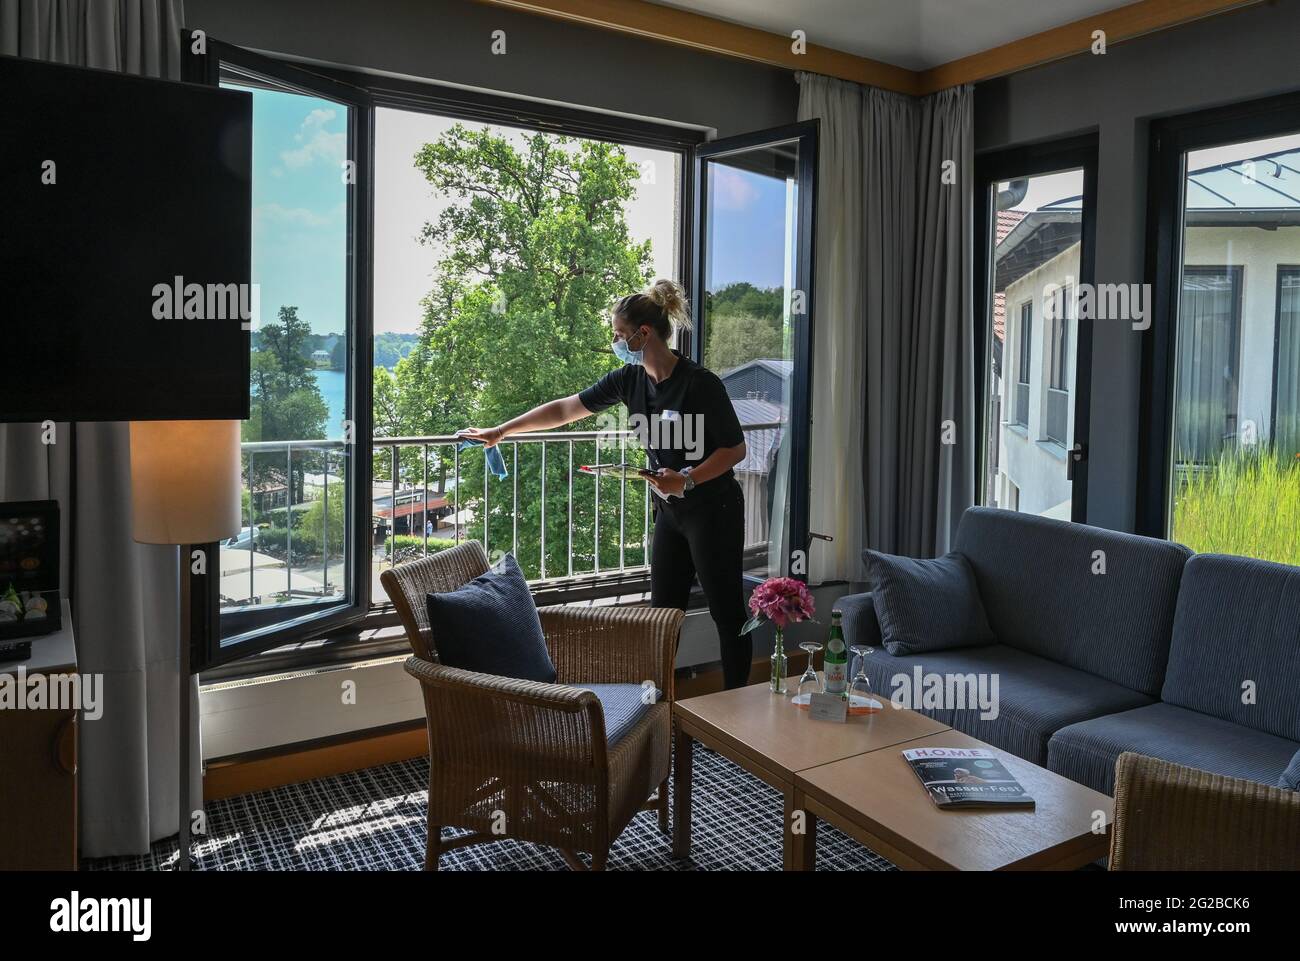 Bad Saarow, Deutschland. Juni 2021. Sabine Sauer, Haushälterin des Hotel  Esplanade Resort and Spa, reinigt ein Geländer an einem Fenster eines  Hotelzimmers. Ab dem 11. Juni sind wieder private Übernachtungen in Hotels